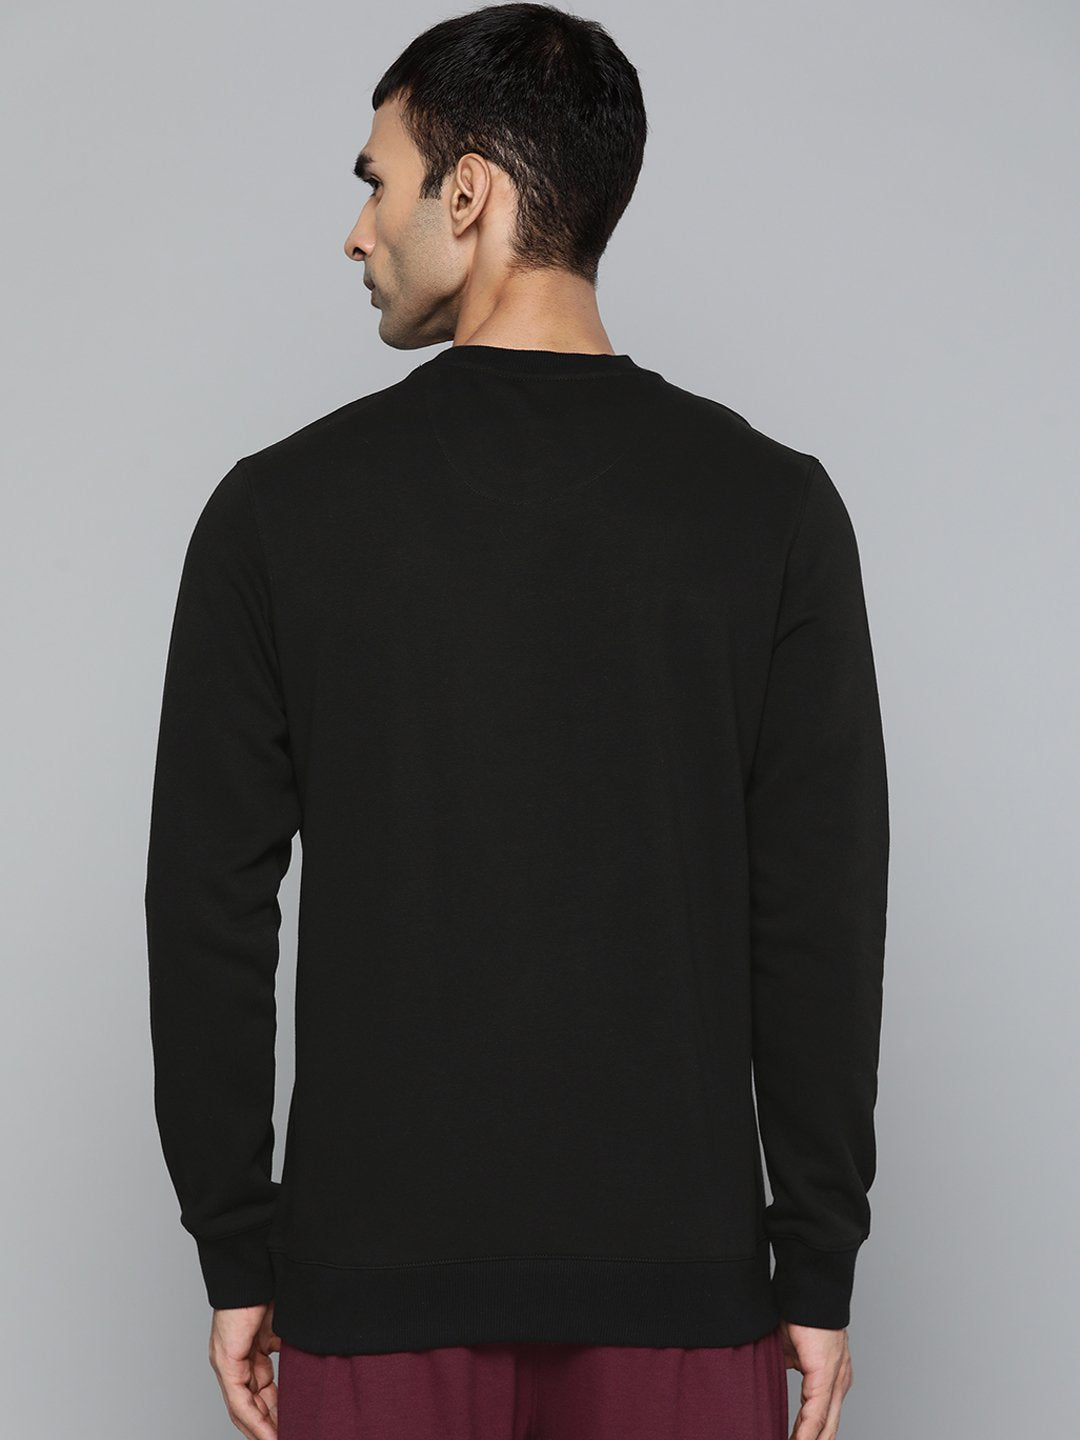 Alcis Men Casual Black Sweatshirts